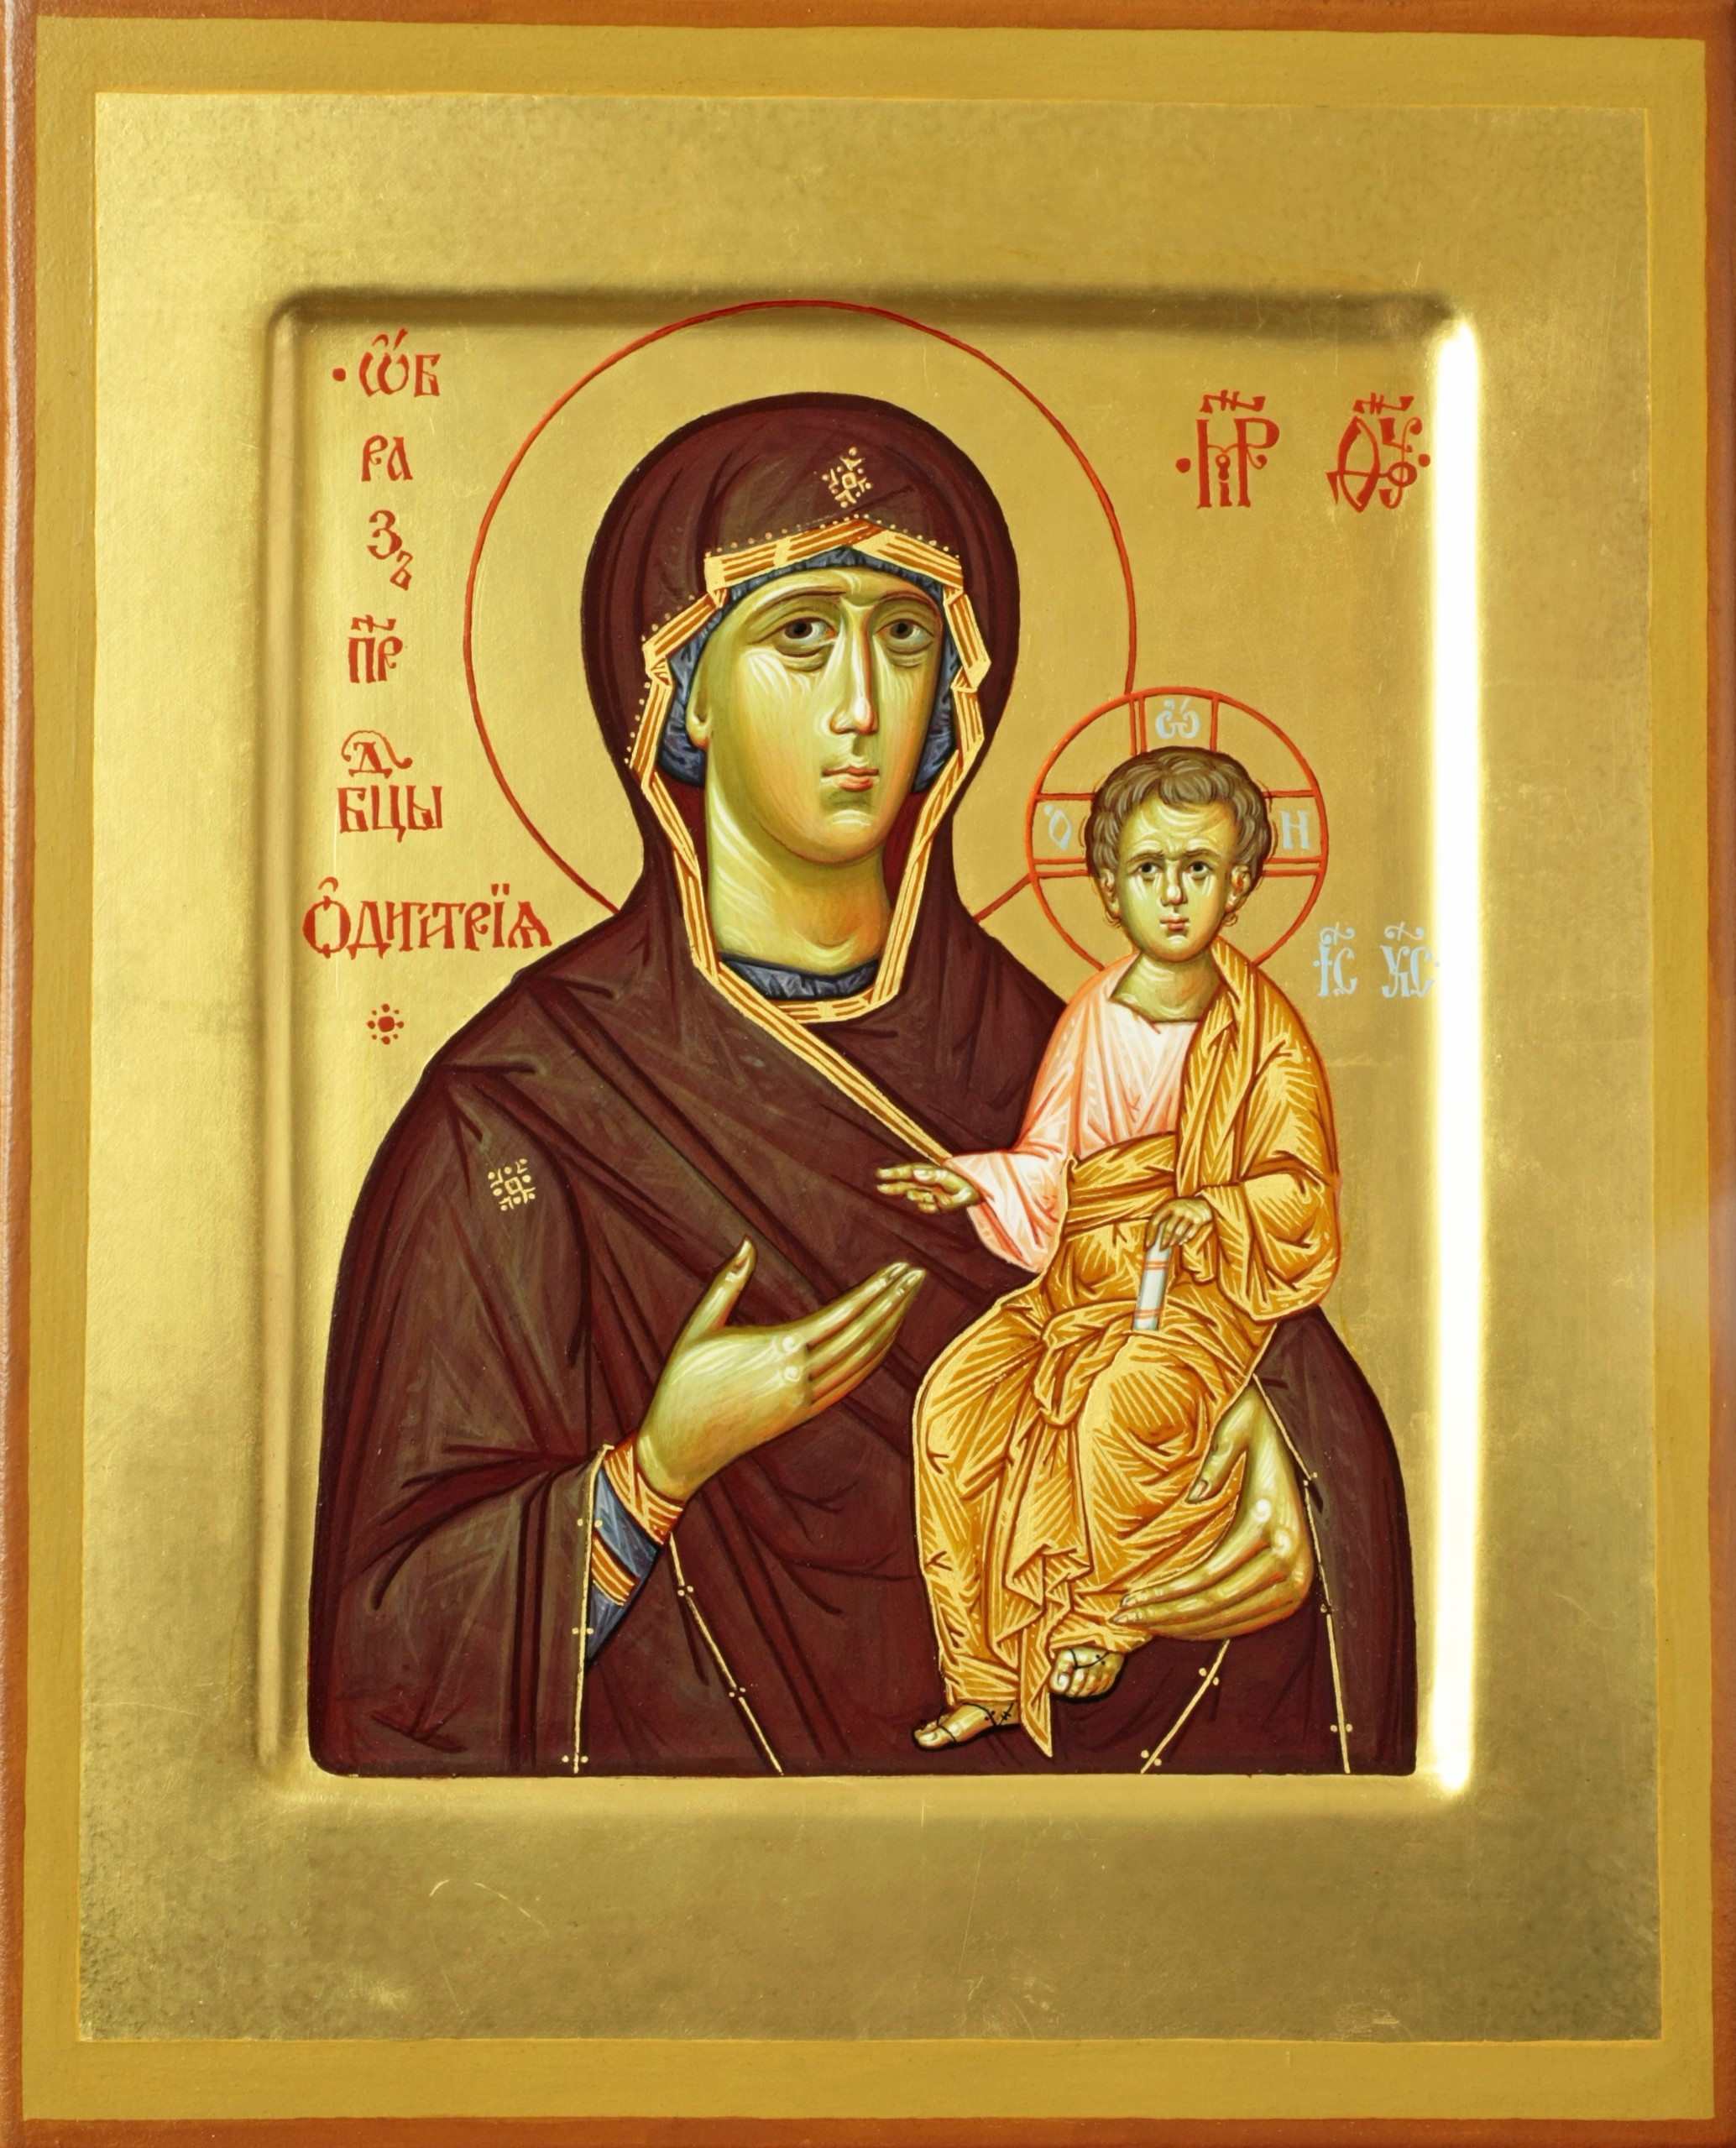 седмиезерная икона божией матери фото